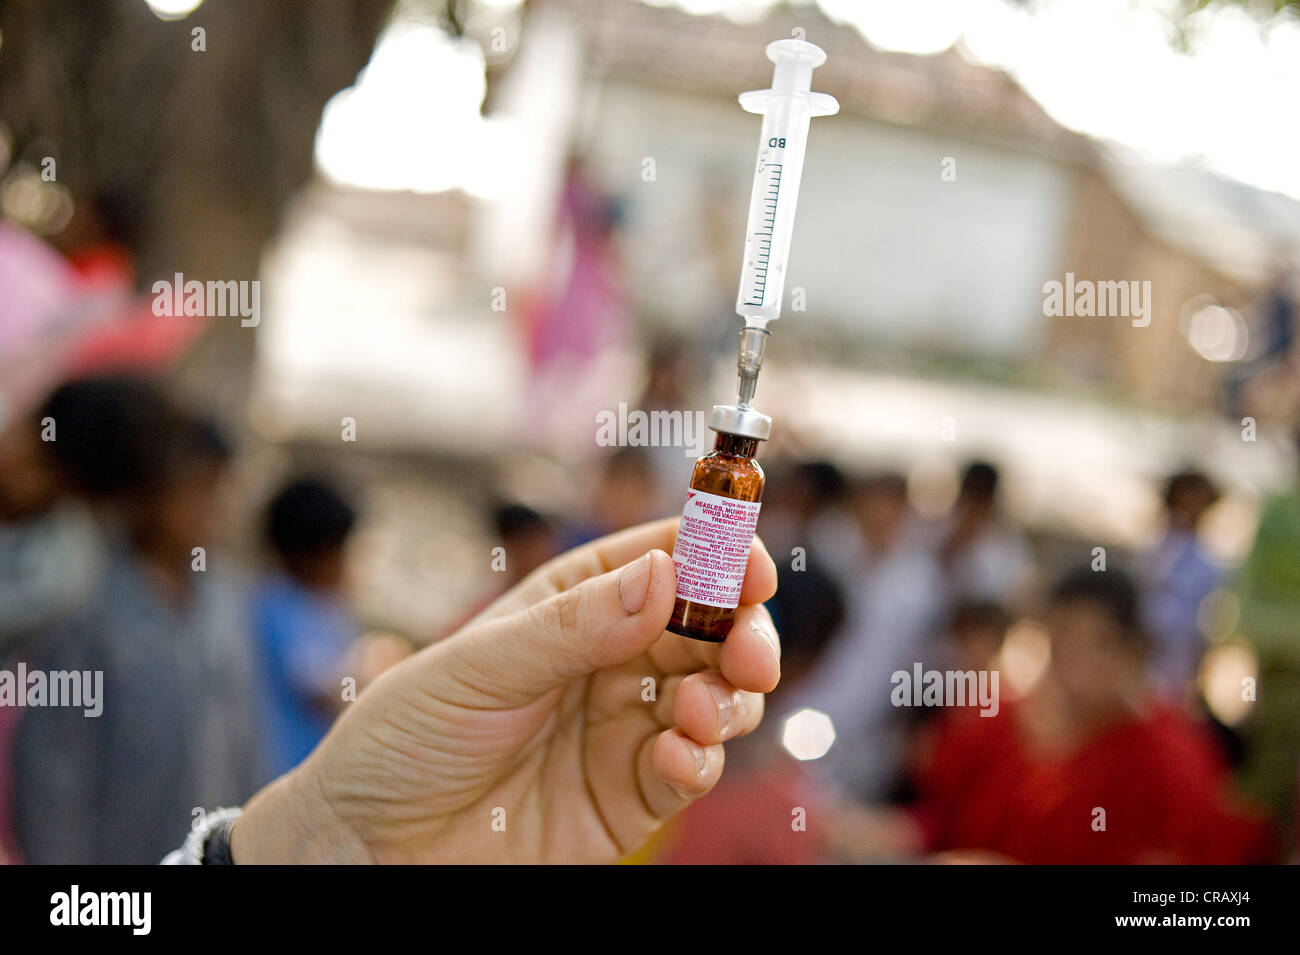 Dipendente del tedesco di medici per i Paesi in via di sviluppo la preparazione di una siringa in una campagna di vaccinazione a Calcutta, , India Foto Stock